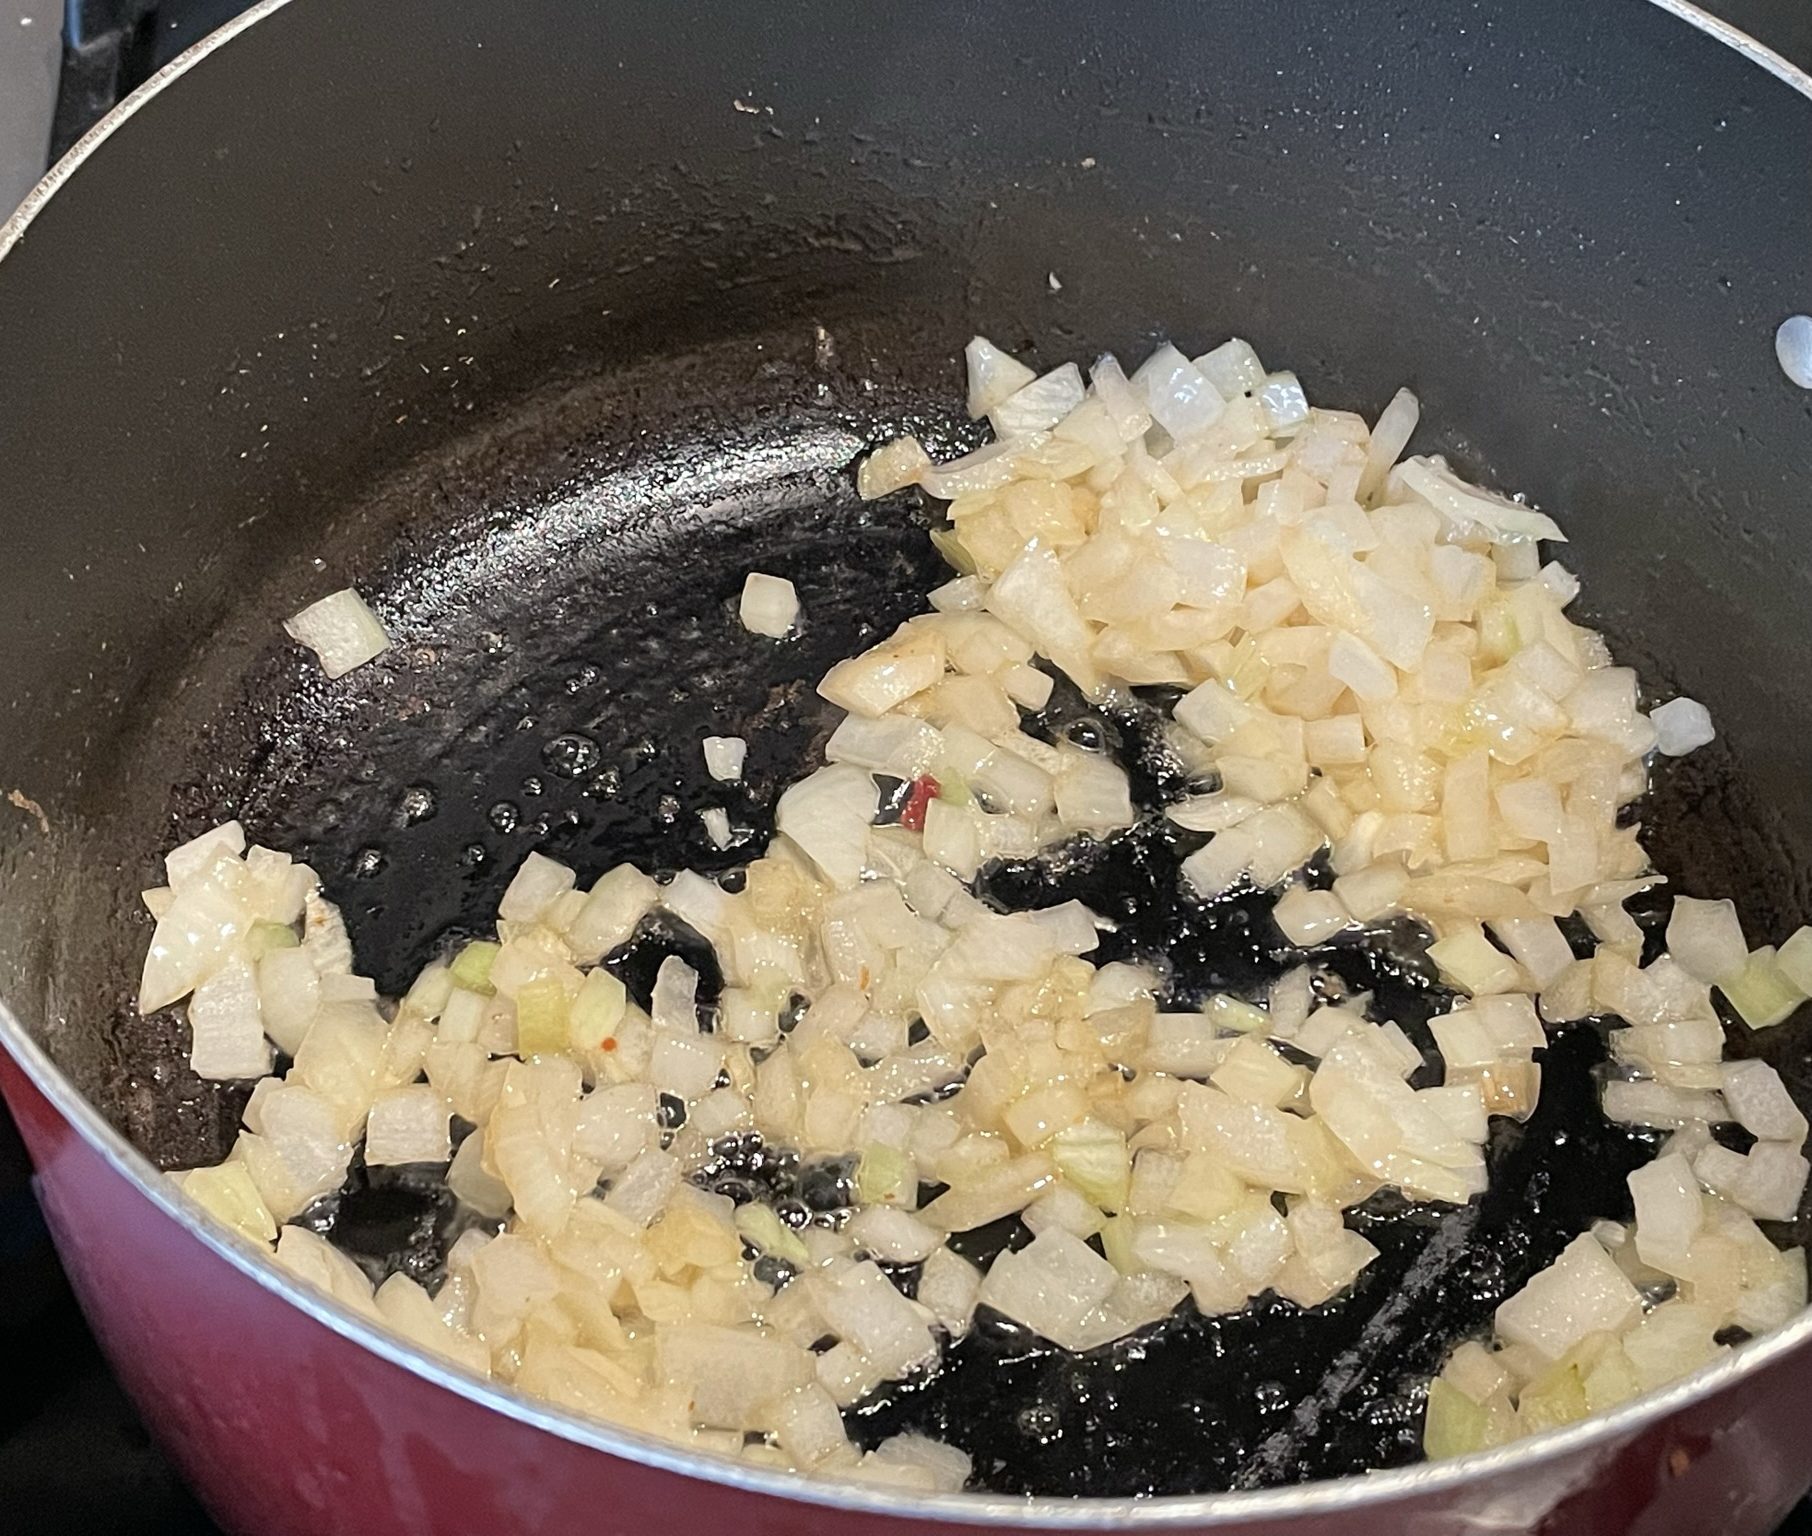 Saute onions until translucent.